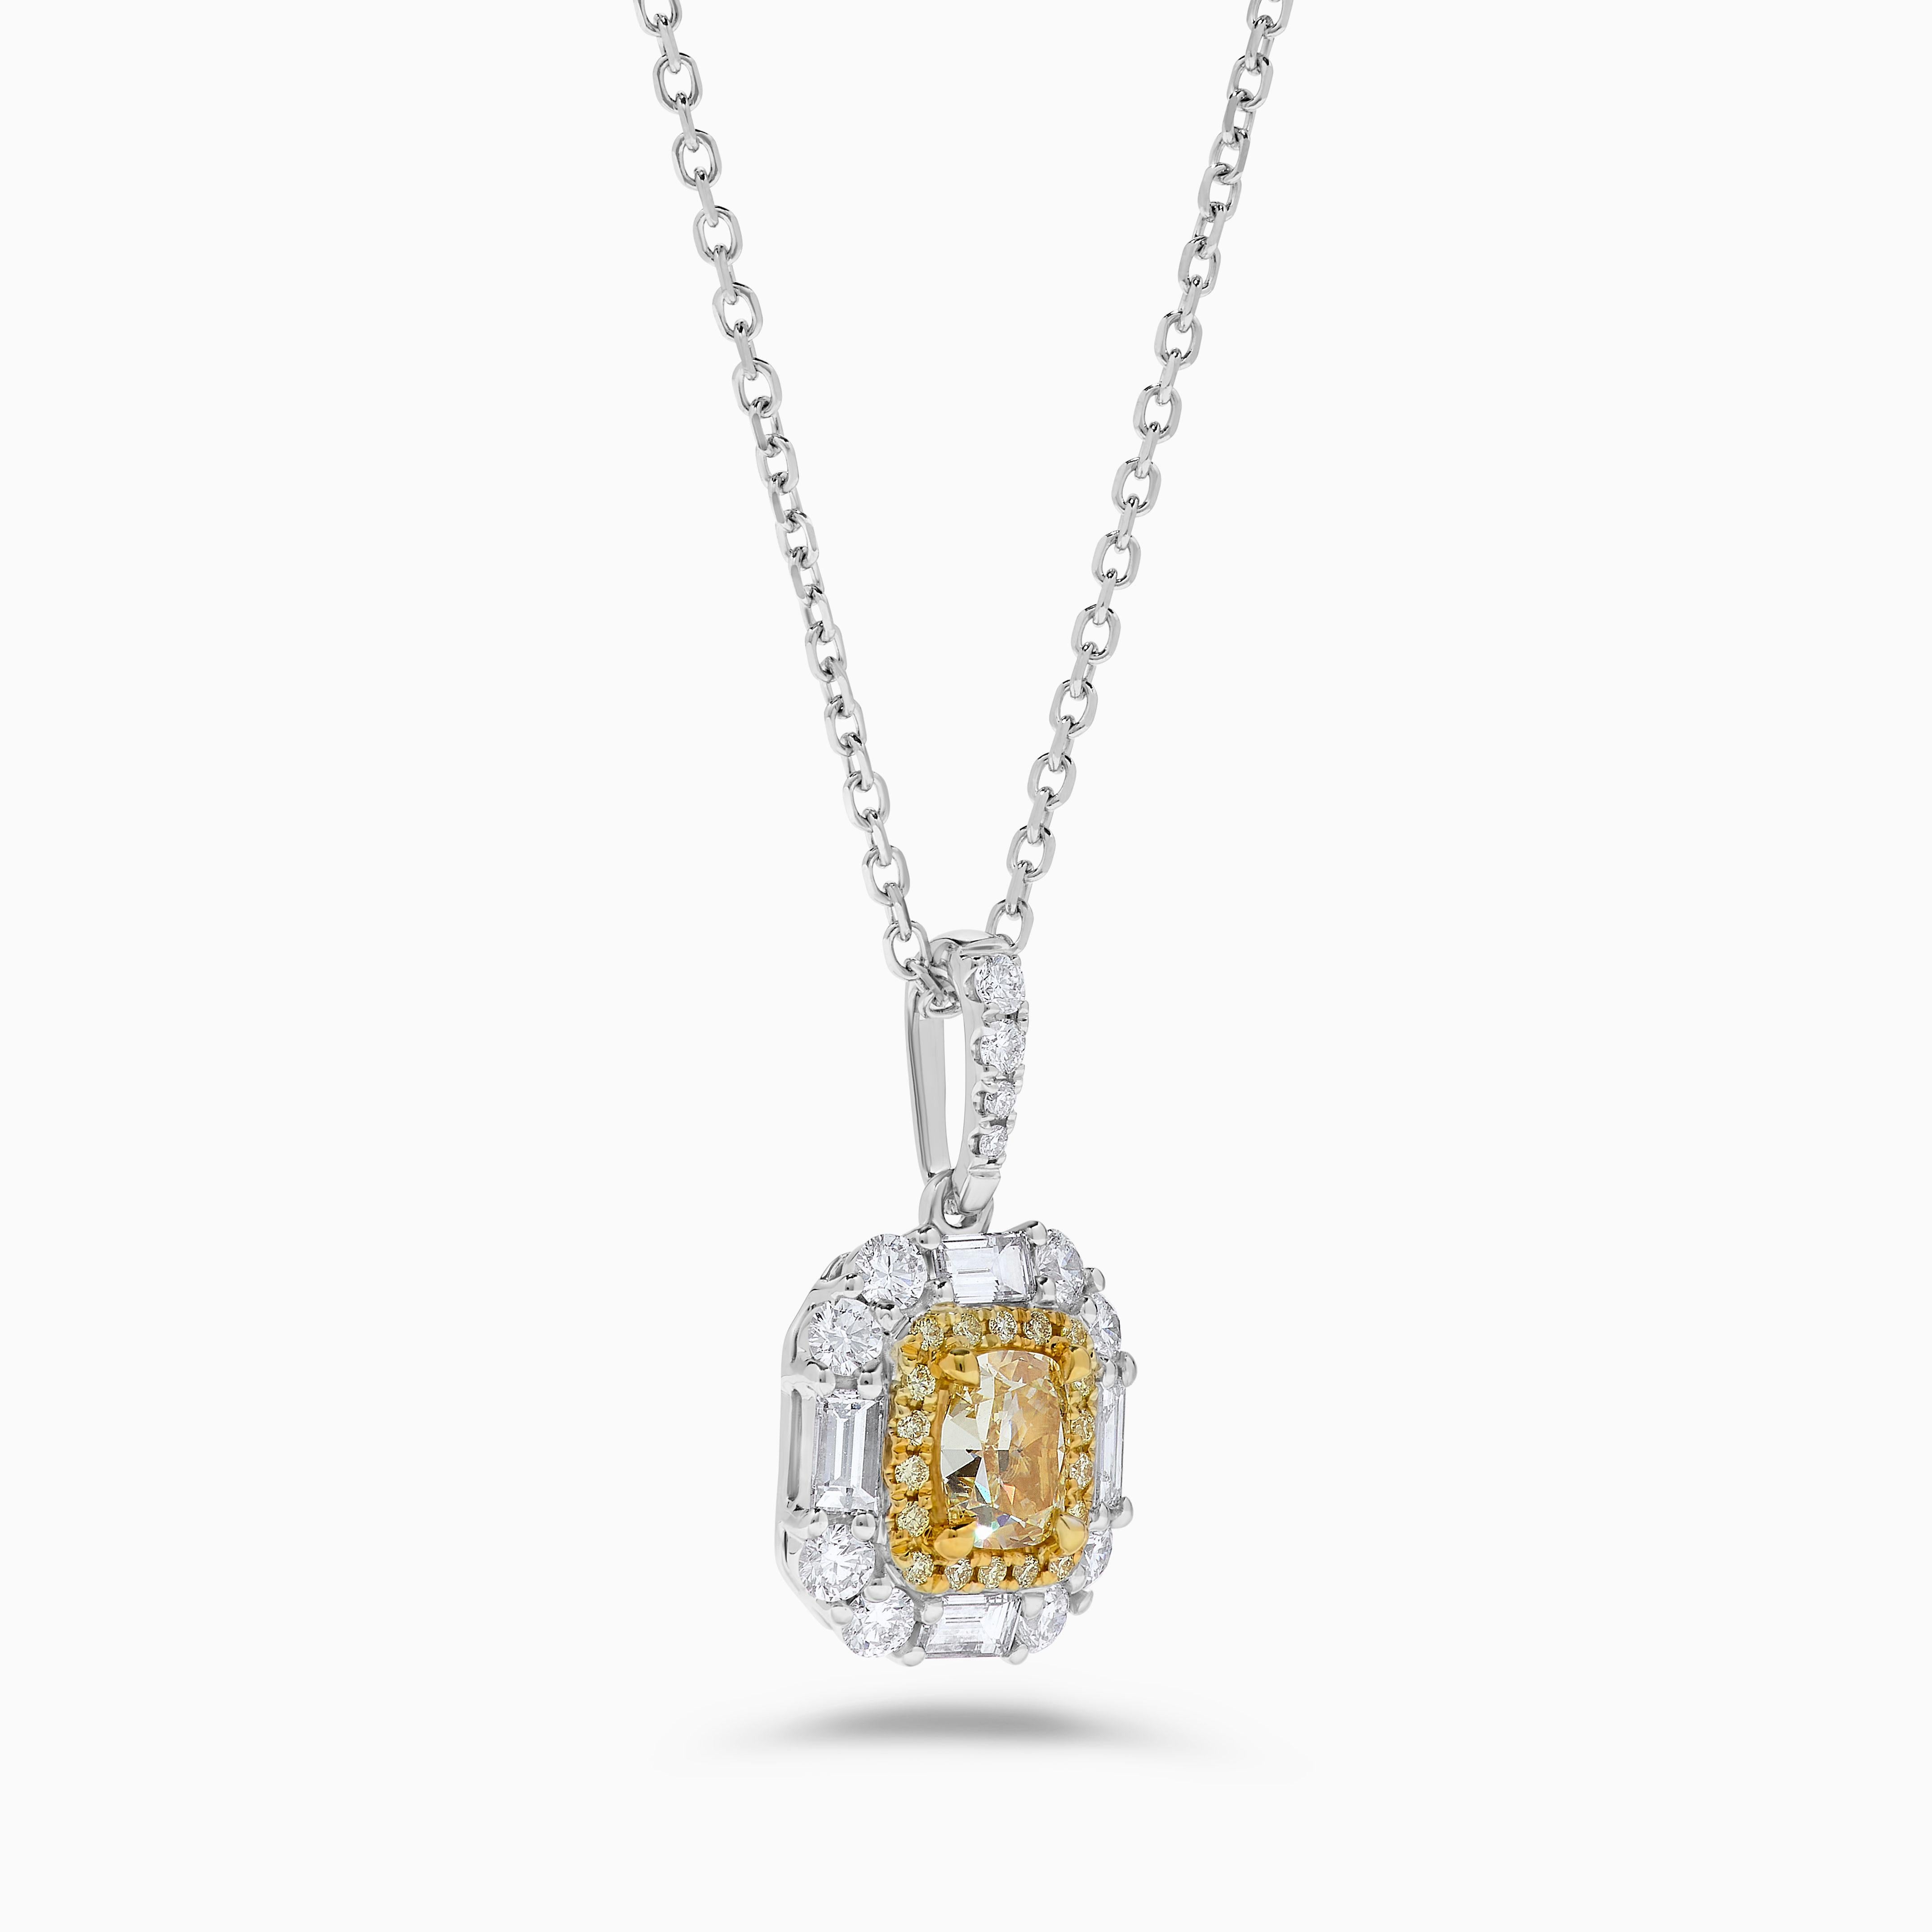 Der faszinierende GIA-zertifizierte Diamantanhänger von RareGemWorld. Montiert in einer schönen Fassung aus 18 Karat Gelb- und Weißgold mit einem natürlichen gelben Diamanten im Kissenschliff. Der gelbe Diamant ist umgeben von weißen Diamanten im